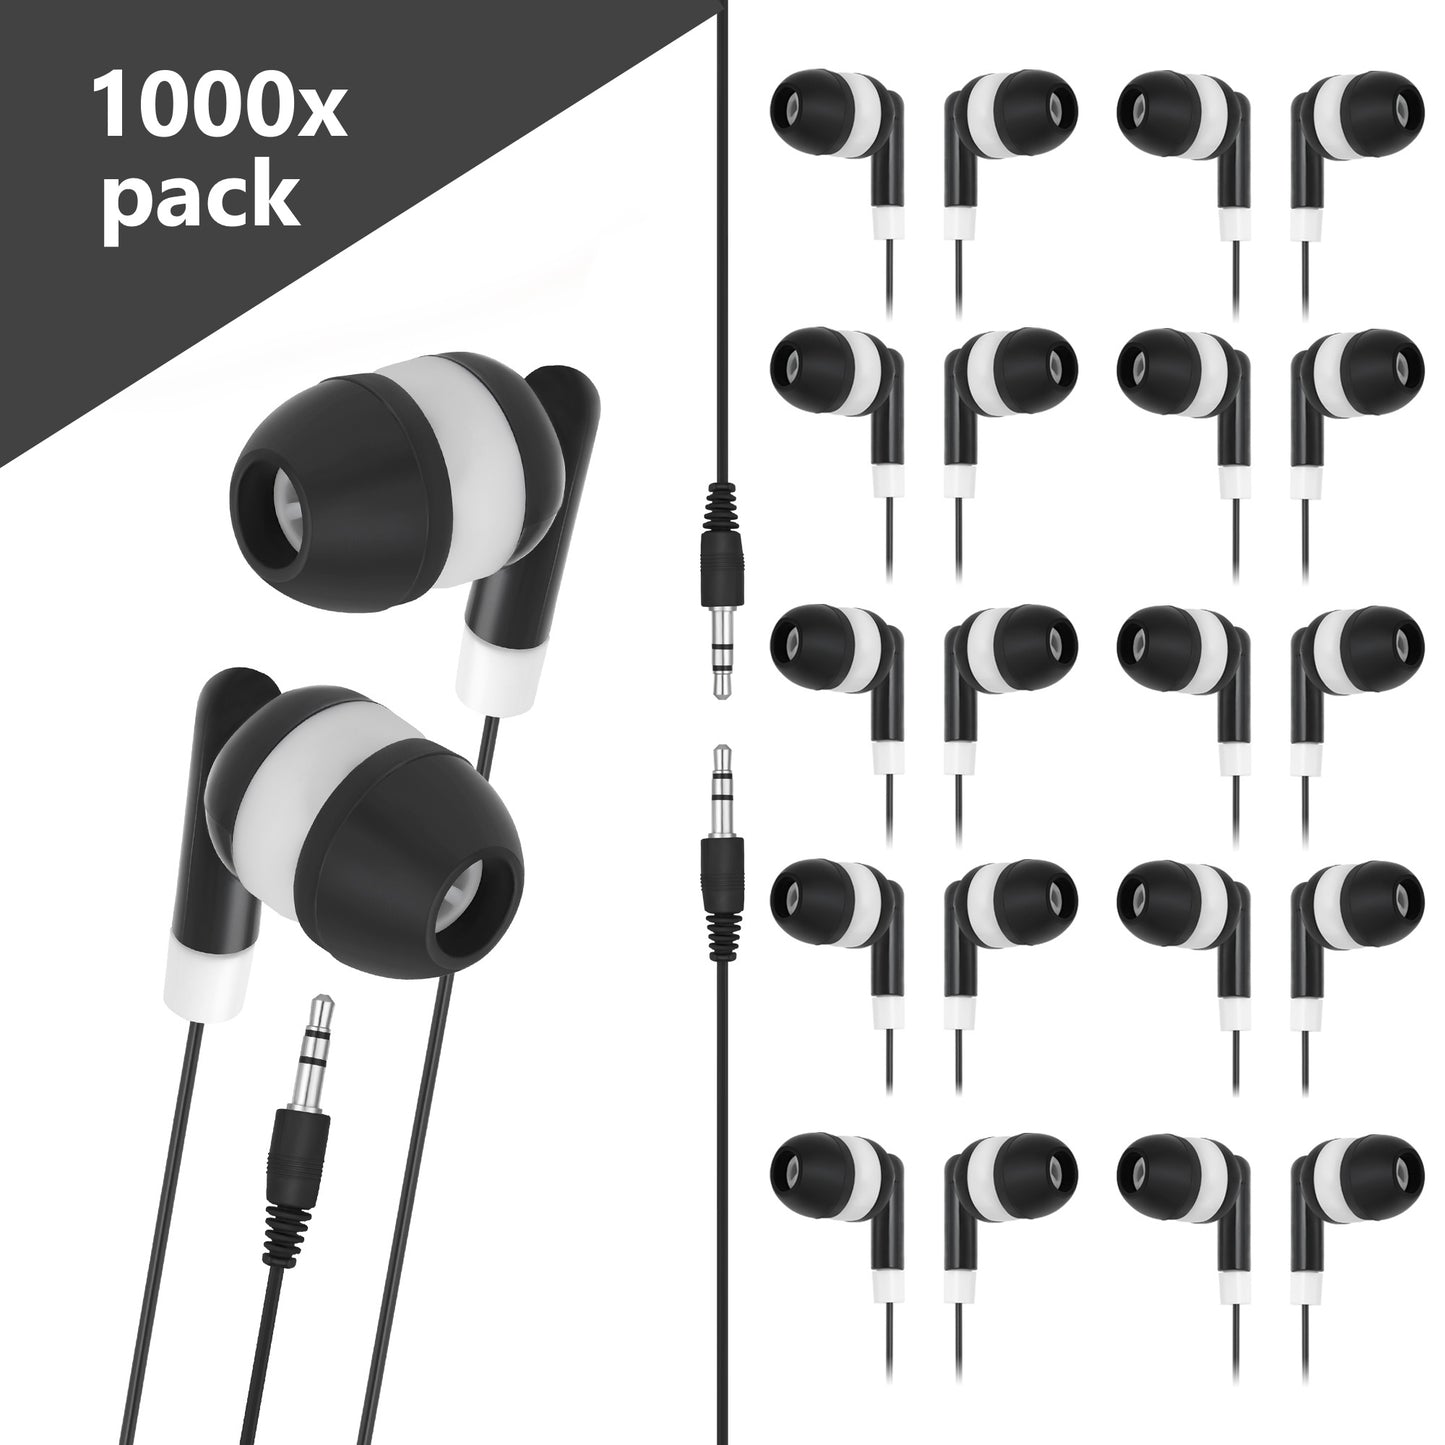 1000 Pack of Basic Dot Earphones, Black